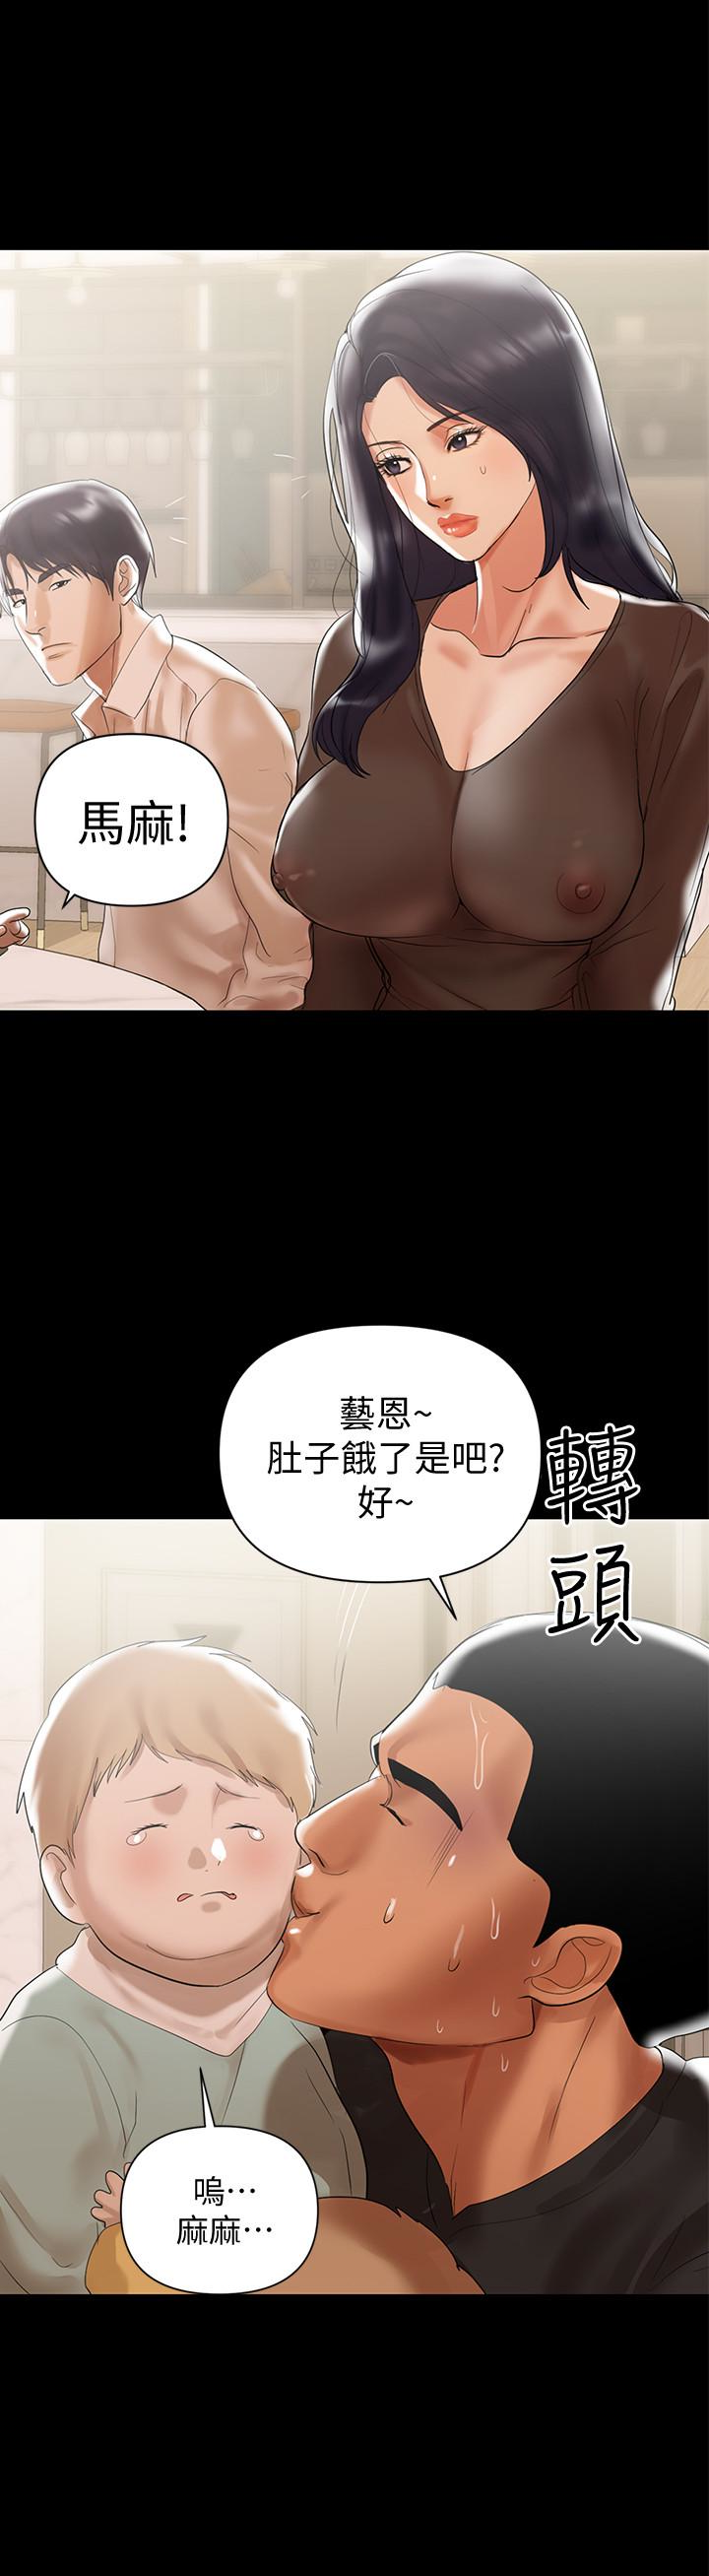 韩国污漫画 兼職奶媽 第4话-别人家的小孩居然叫我老婆马麻…? 13